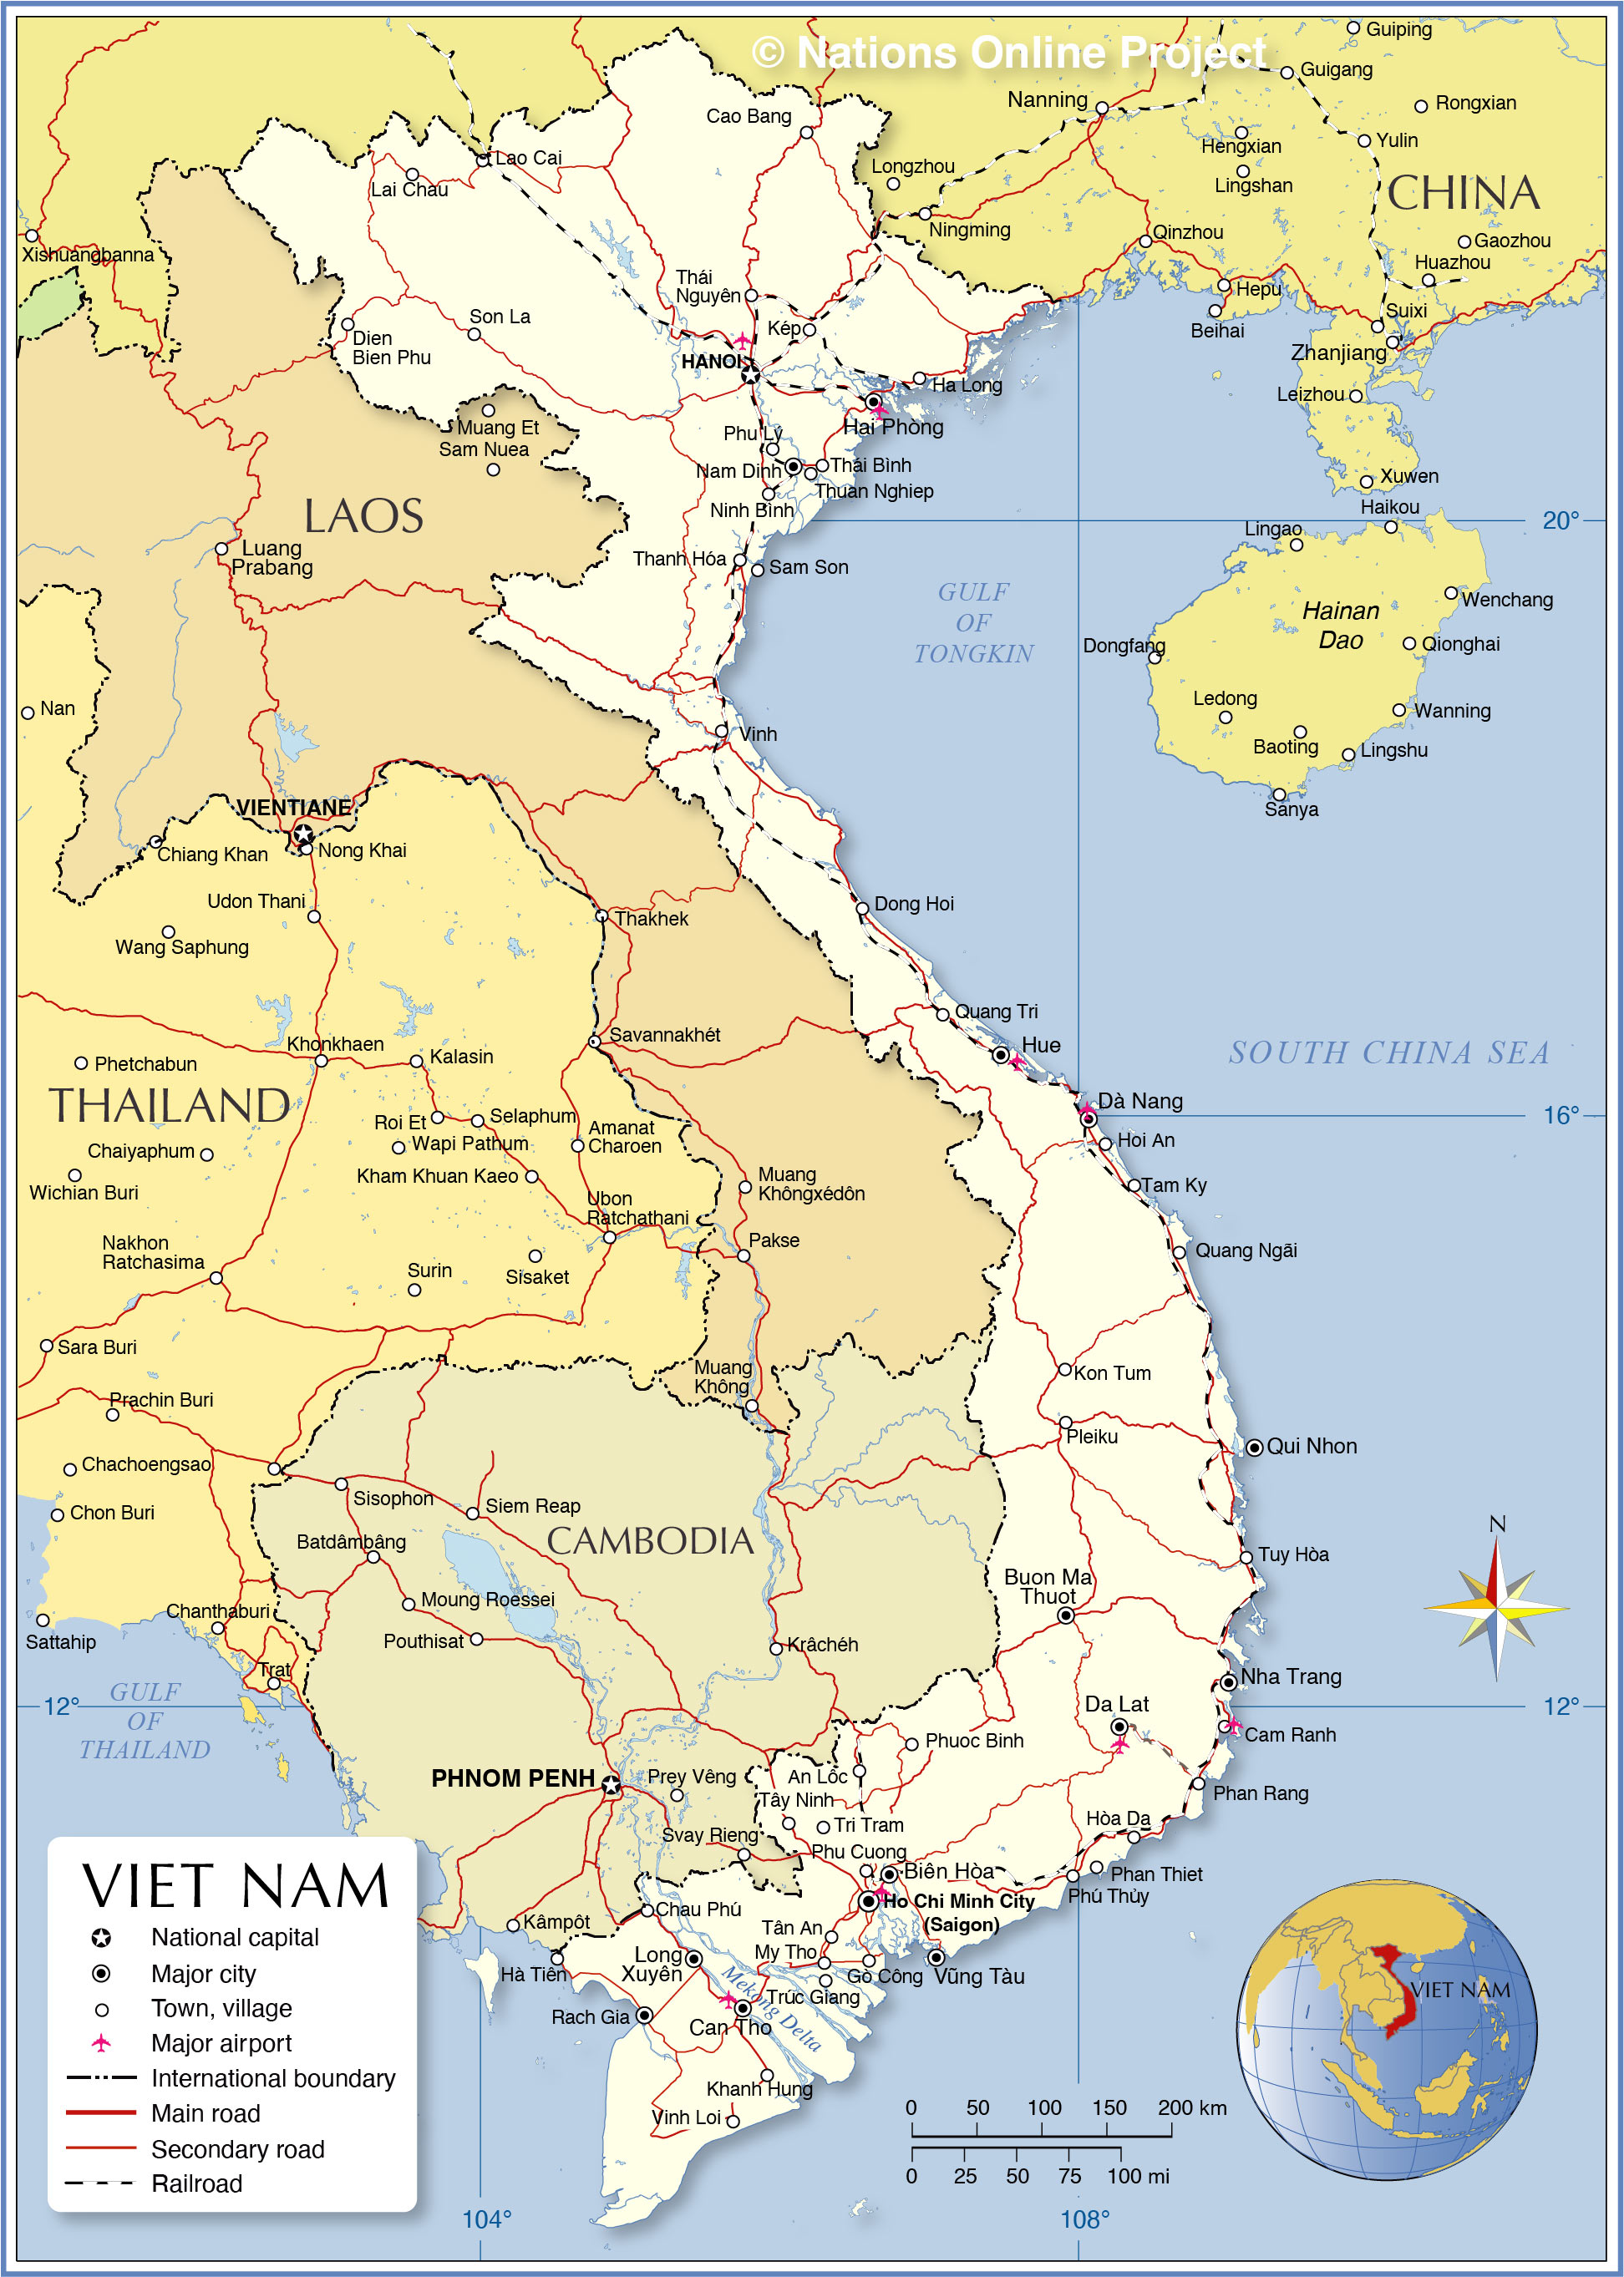 https://www.nationsonline.org/maps/vietnam-political-map.jpg